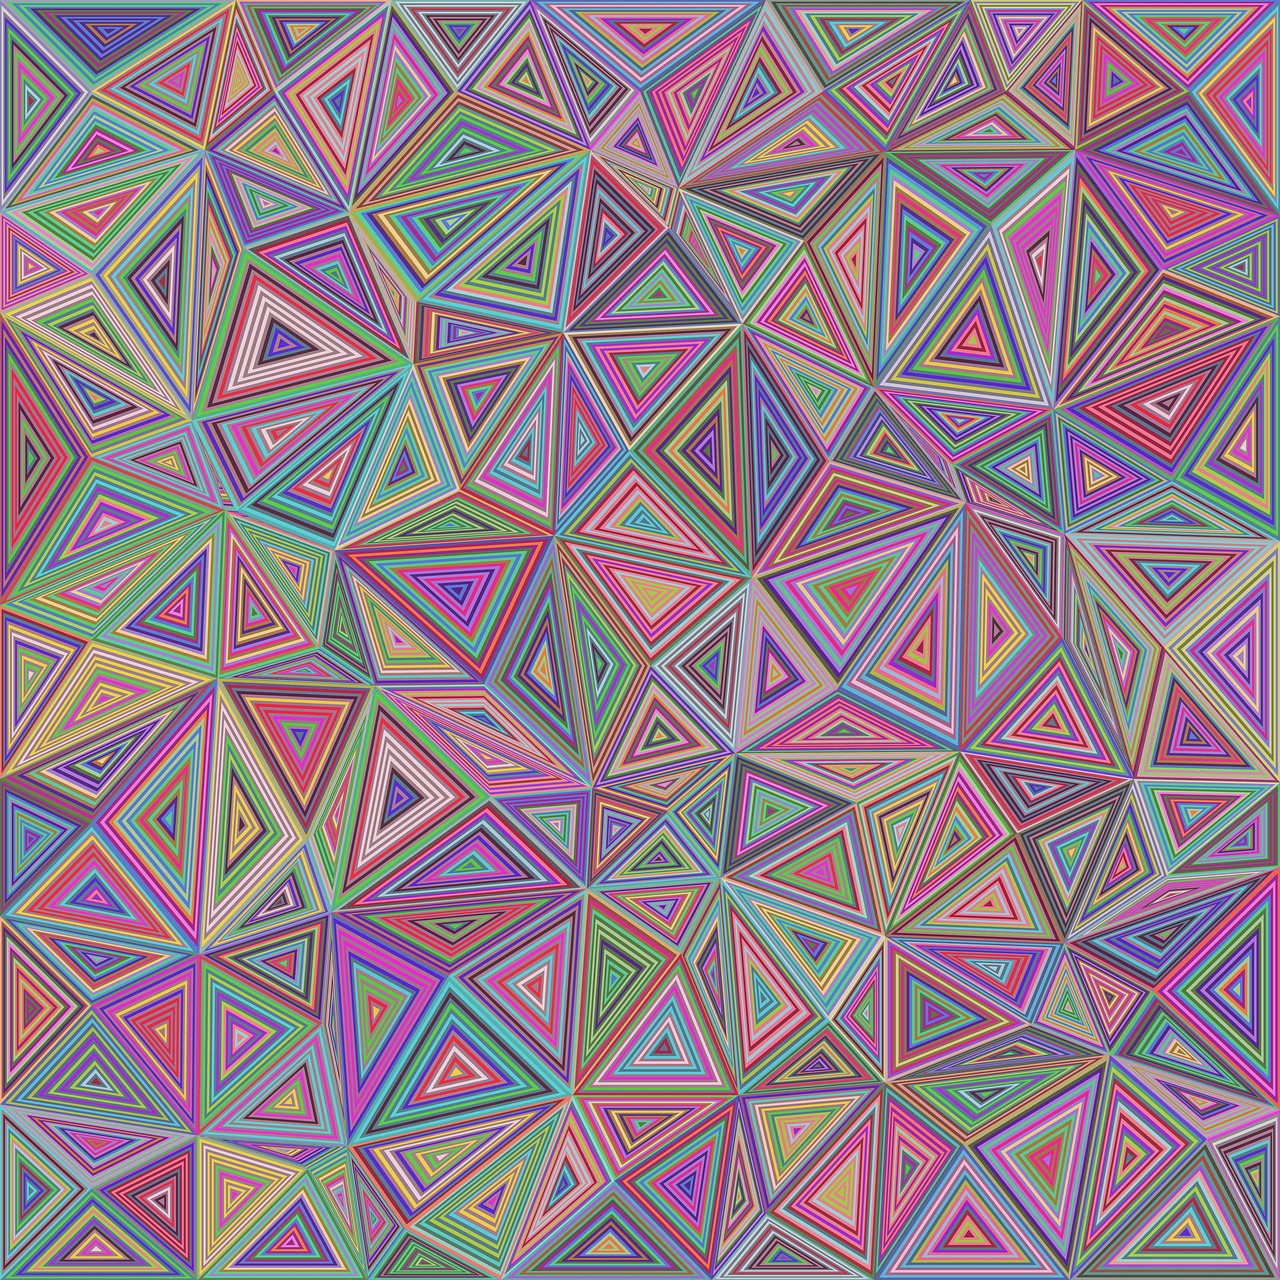 Fonas, Mozaika, Modelis, Poligonas, Daugiakampis, Trikampis, Trikampis, Geometrinis, Plytelės, Chaotiškas